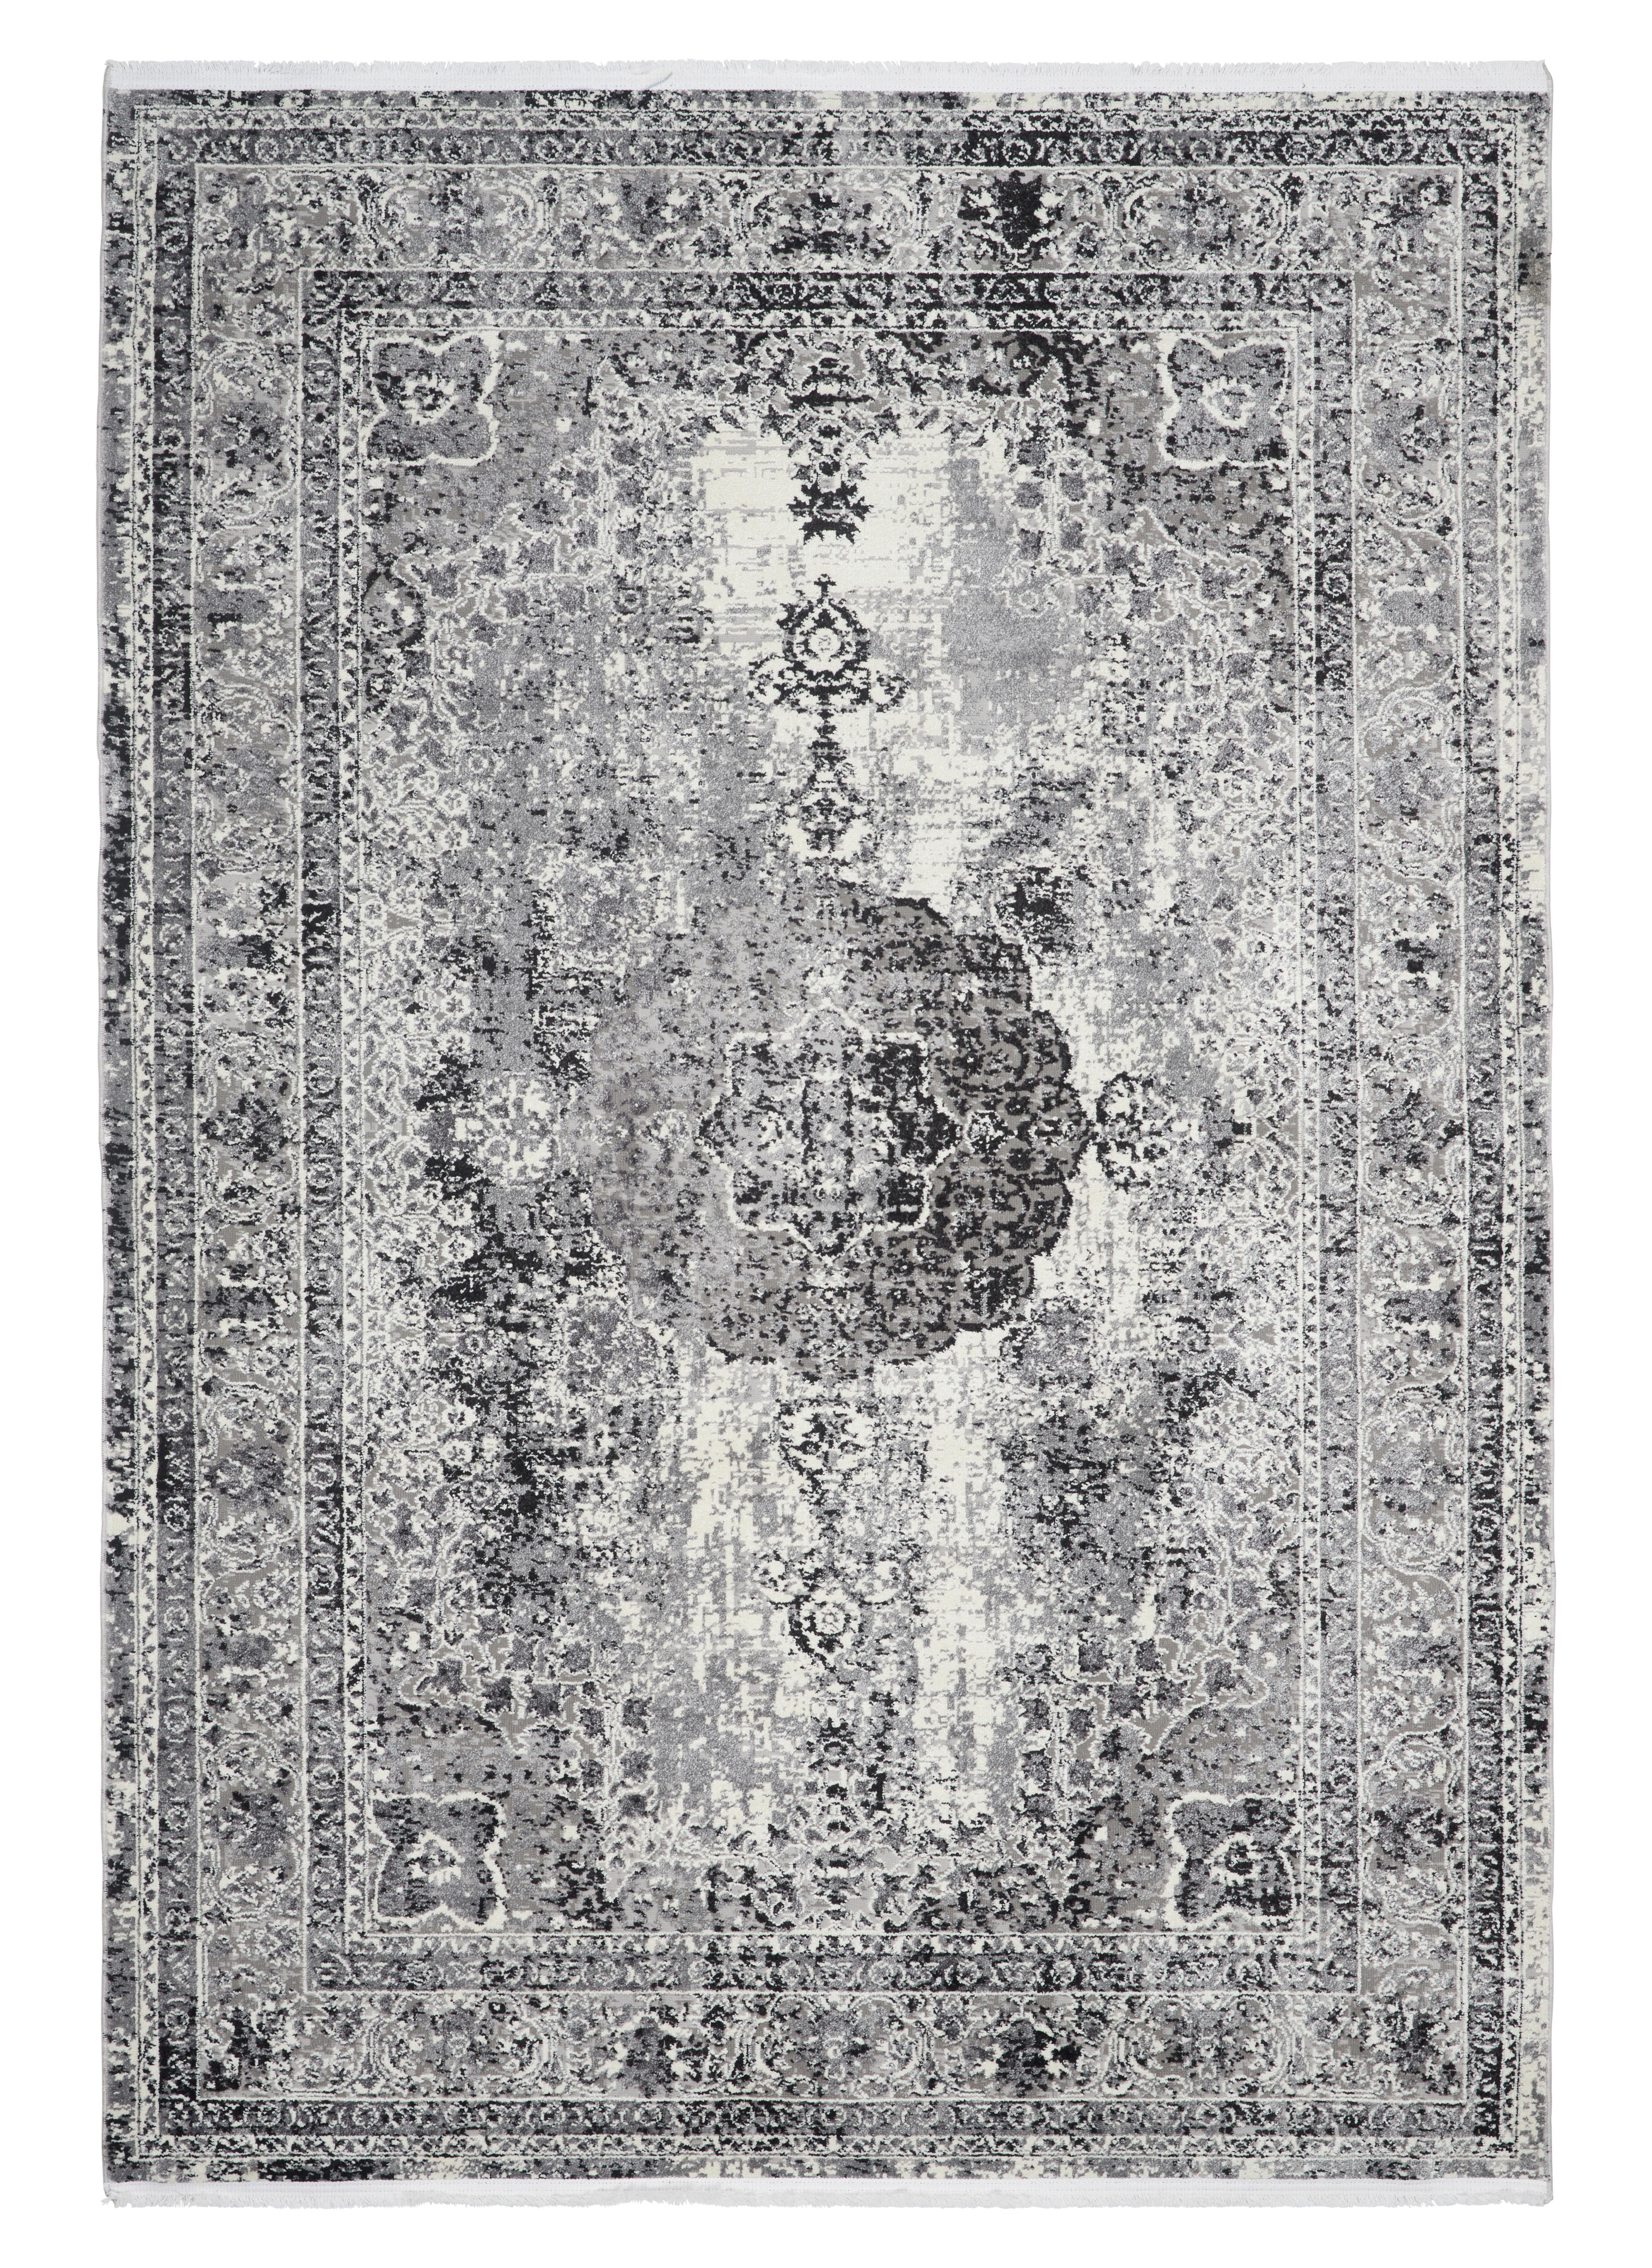 Tkaný Koberec Marcus 2, 120/170cm - krémová/svetlosivá, textil (120/170cm) - Modern Living